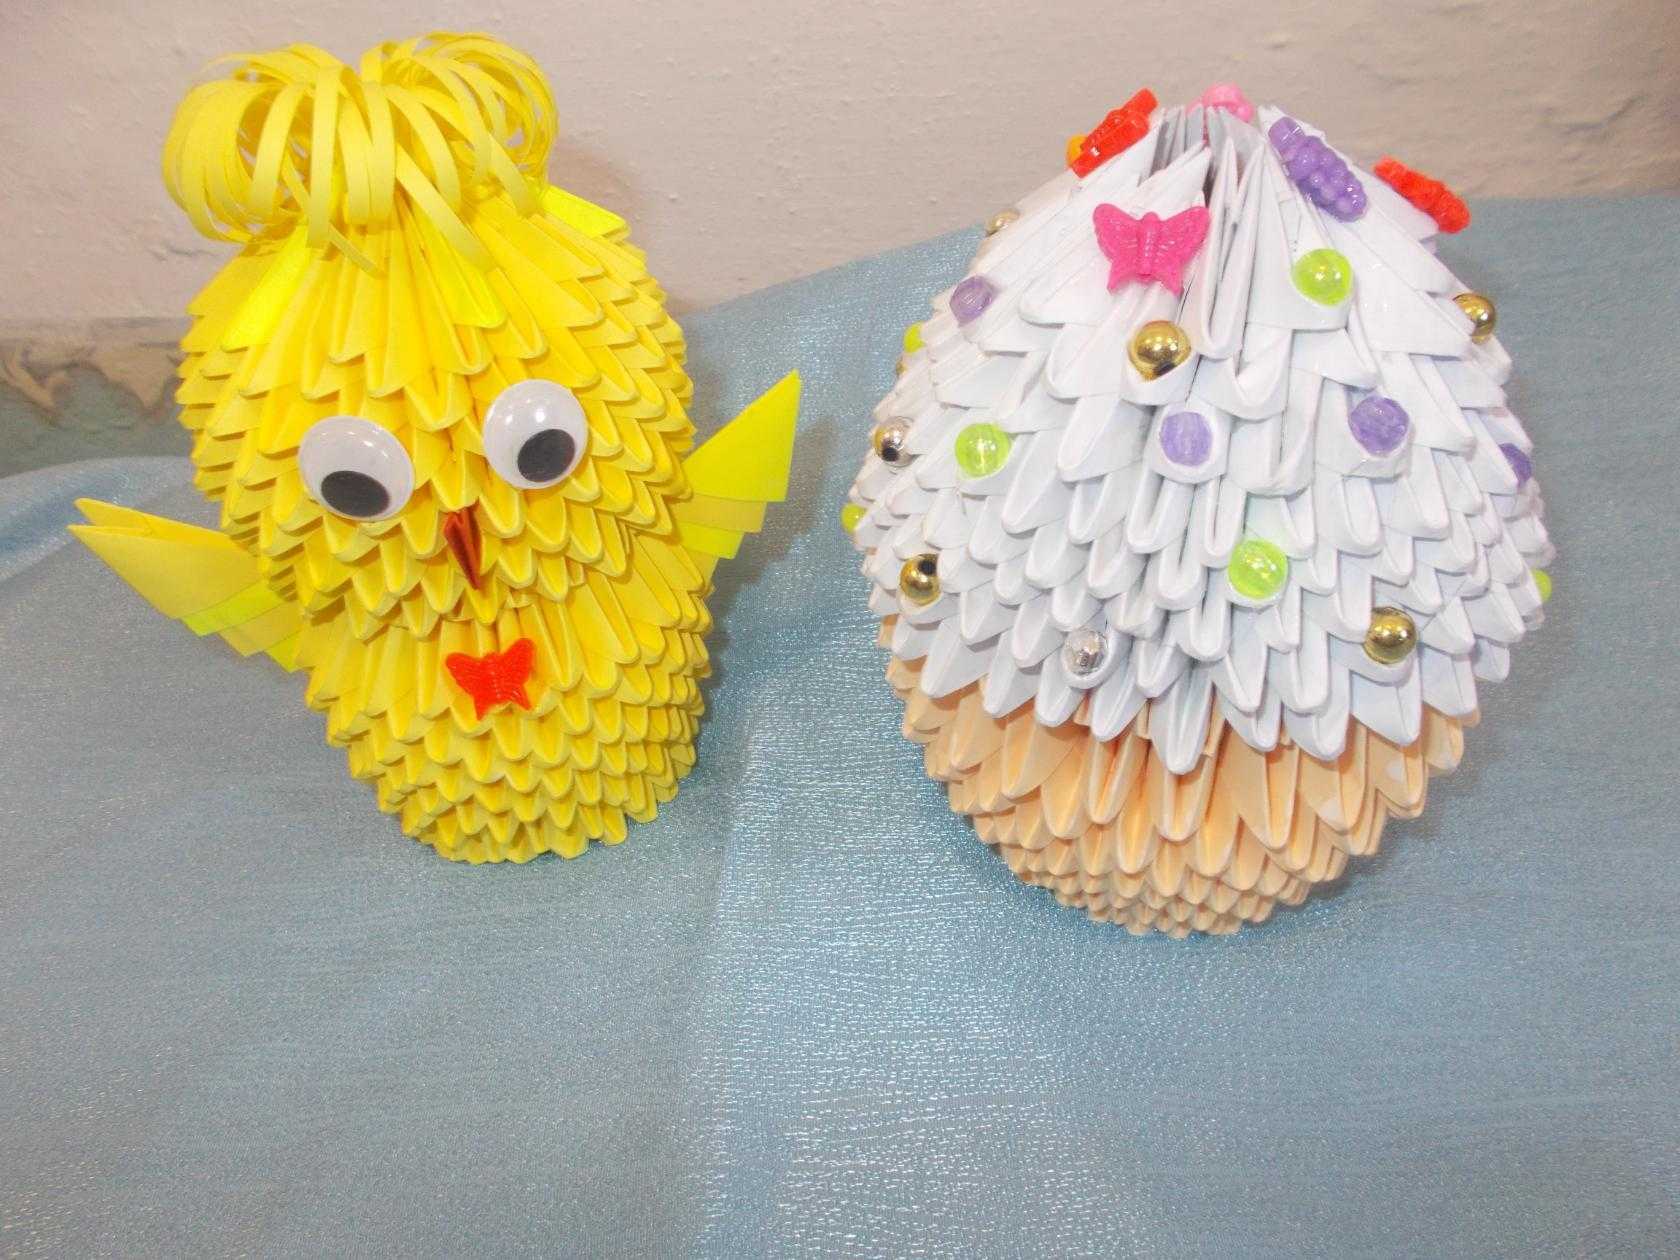 Яйцо киндер сюрприз своими руками из бумаги: распечатать шаблоны яиц, пасхальное яйцо из модулей оригами, пошаговая инструкция как сделать большой киндер, аппликация цыпленок в яйце из цветной бумаги